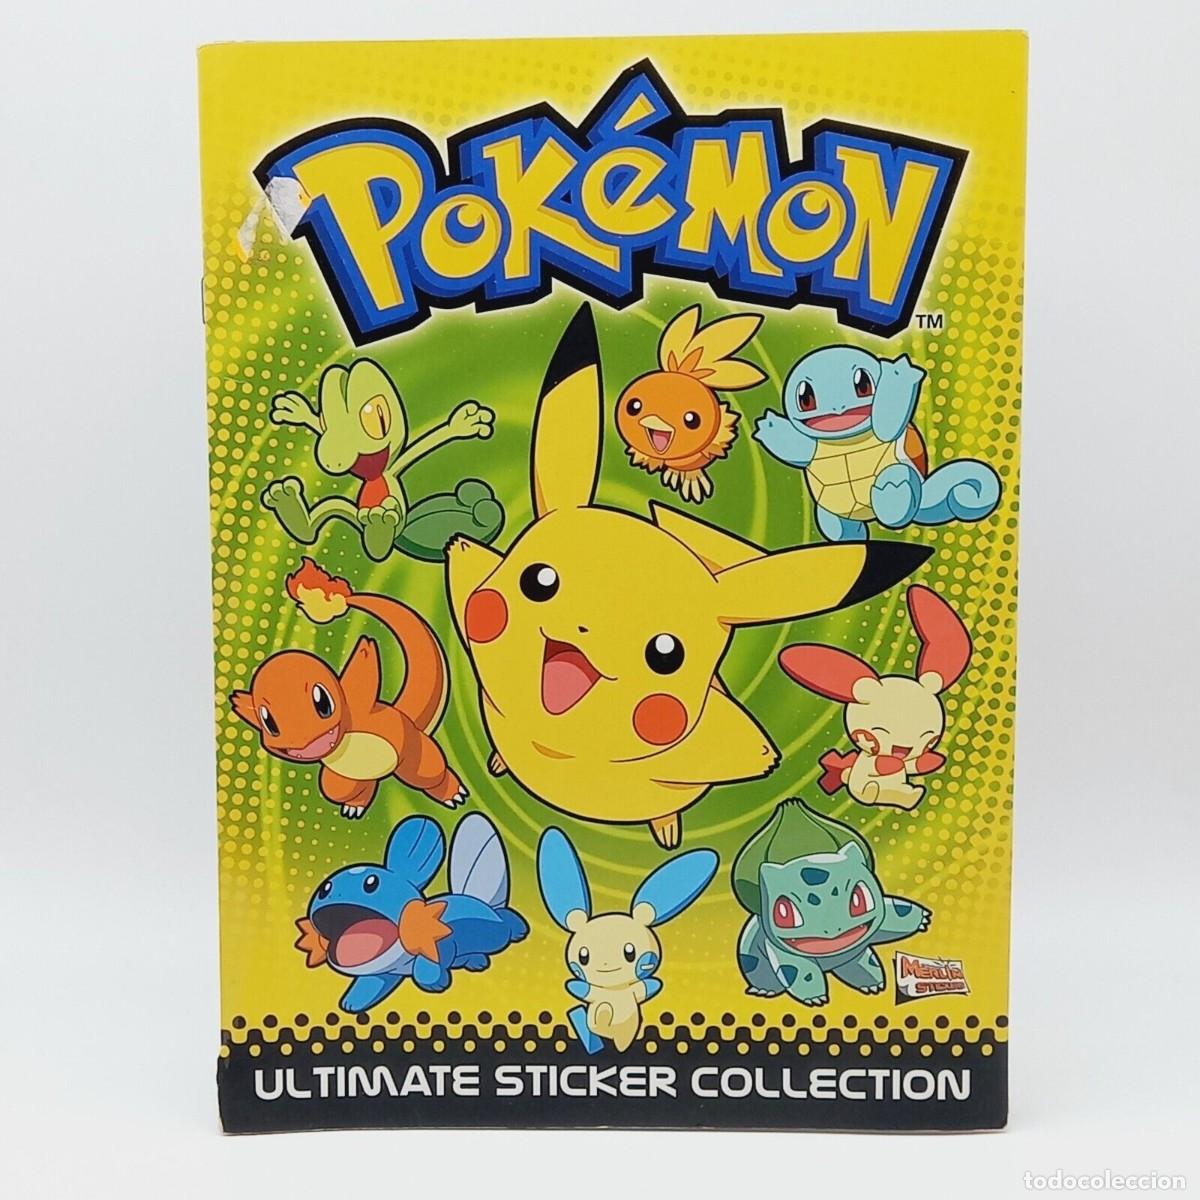 album pokemon ultimate sticker collection topps - Acquista Album